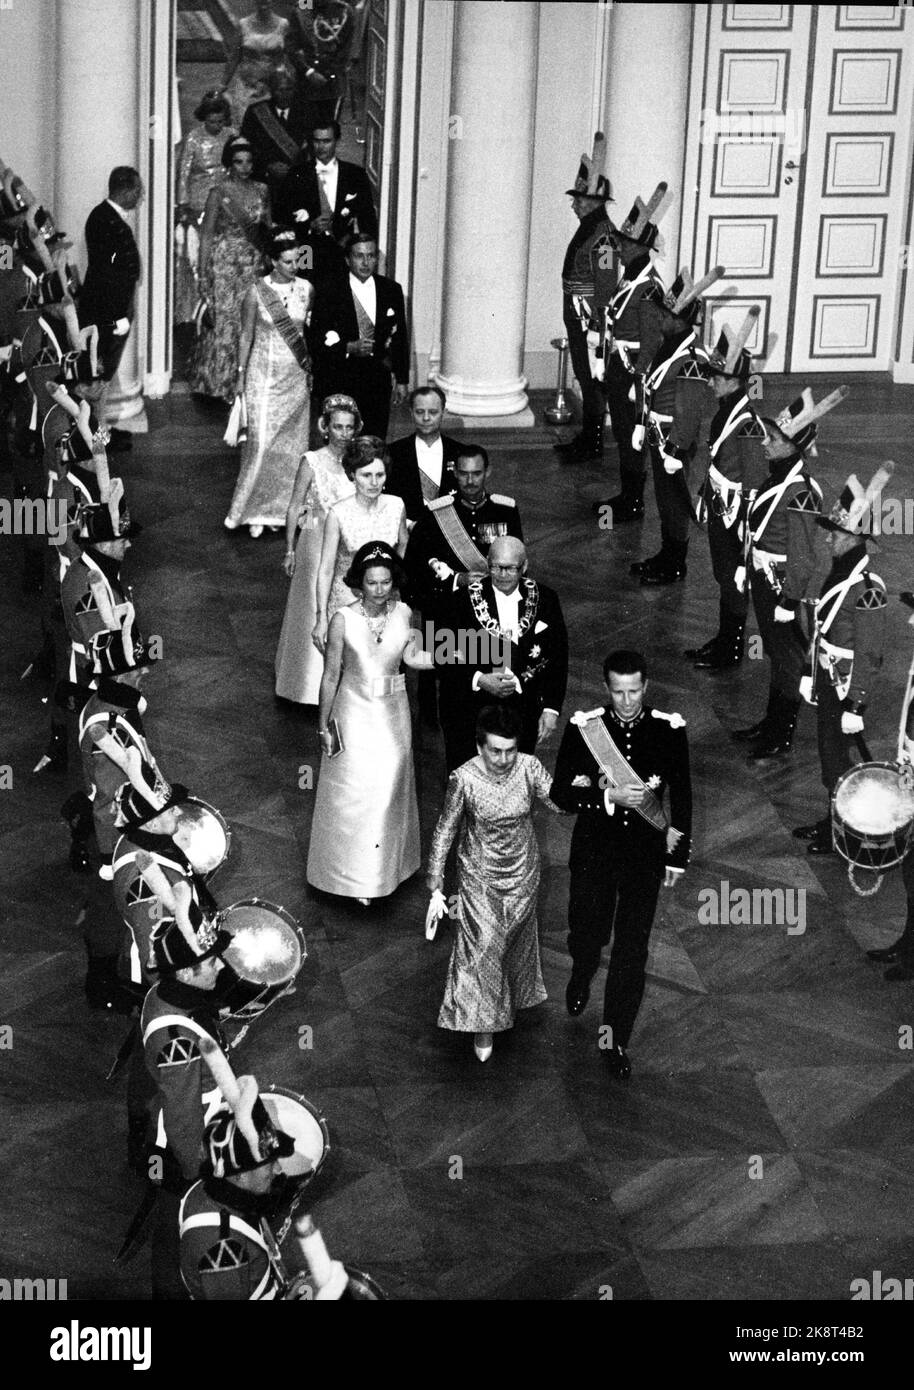 Oslo 1968-08-29: Königliche norwegische Hochzeit. Kronprinz Harald heiratet Sonja Haraldsen. Hier sind die Gäste des Schlosses. Ziehen Sie Gartensoldaten in ordentlichen Reihen auf jeder Seite der Gäste fest. NTB-Archivfoto / NTB Stockfoto